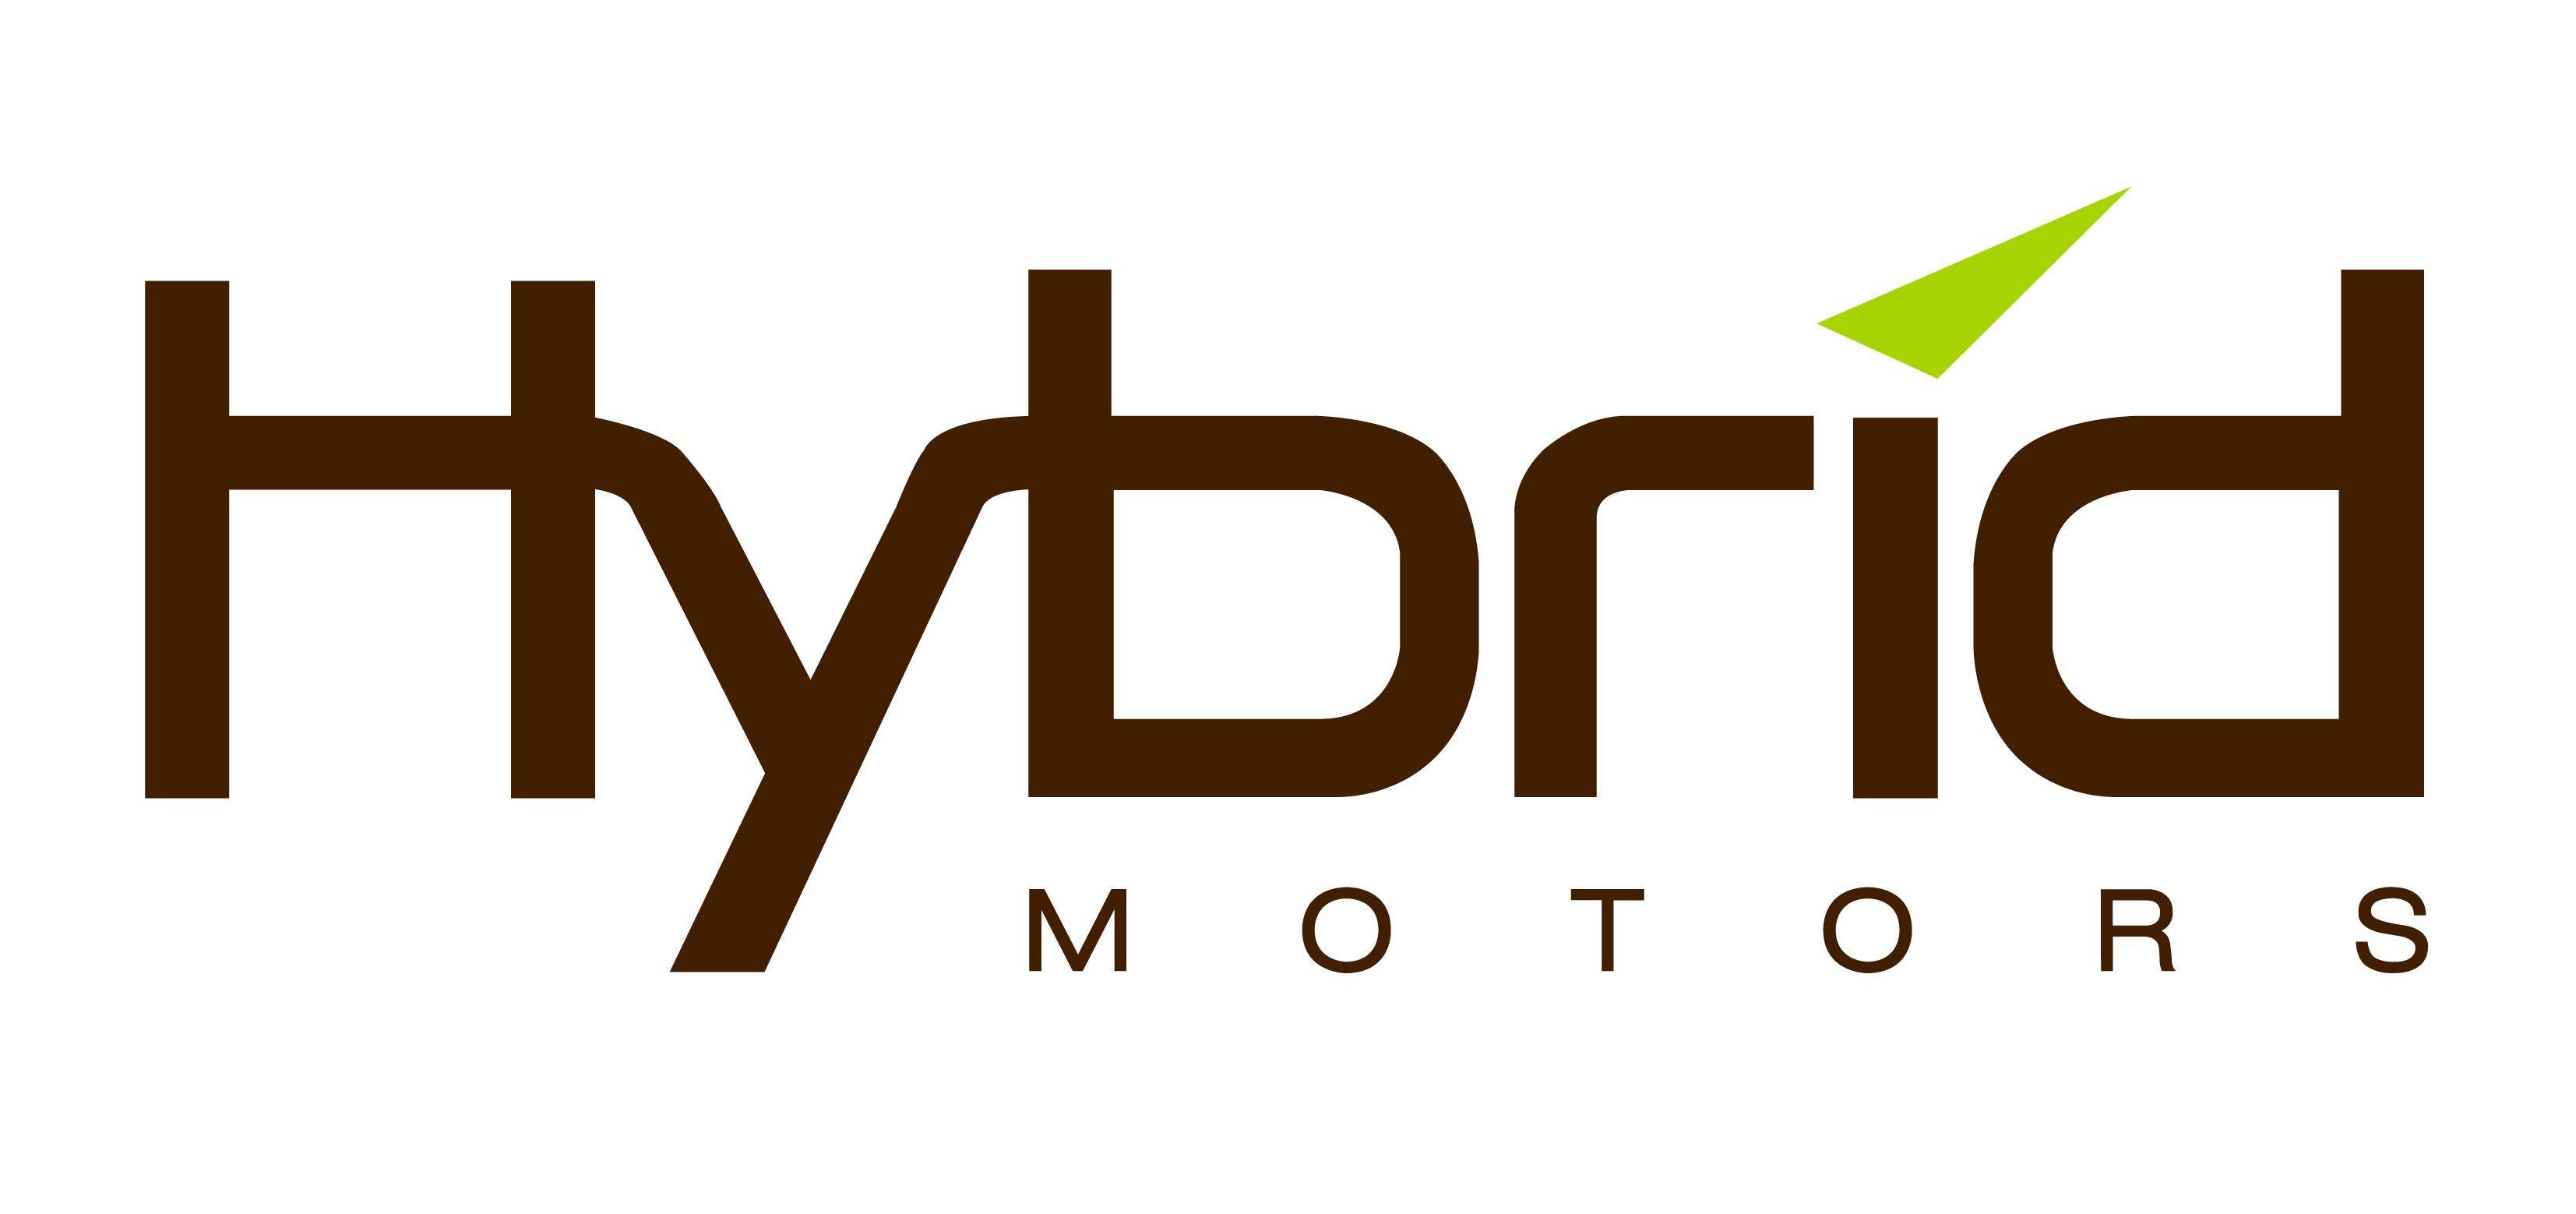 Hybrid Logo - Hybrid motors logo | vikfolio